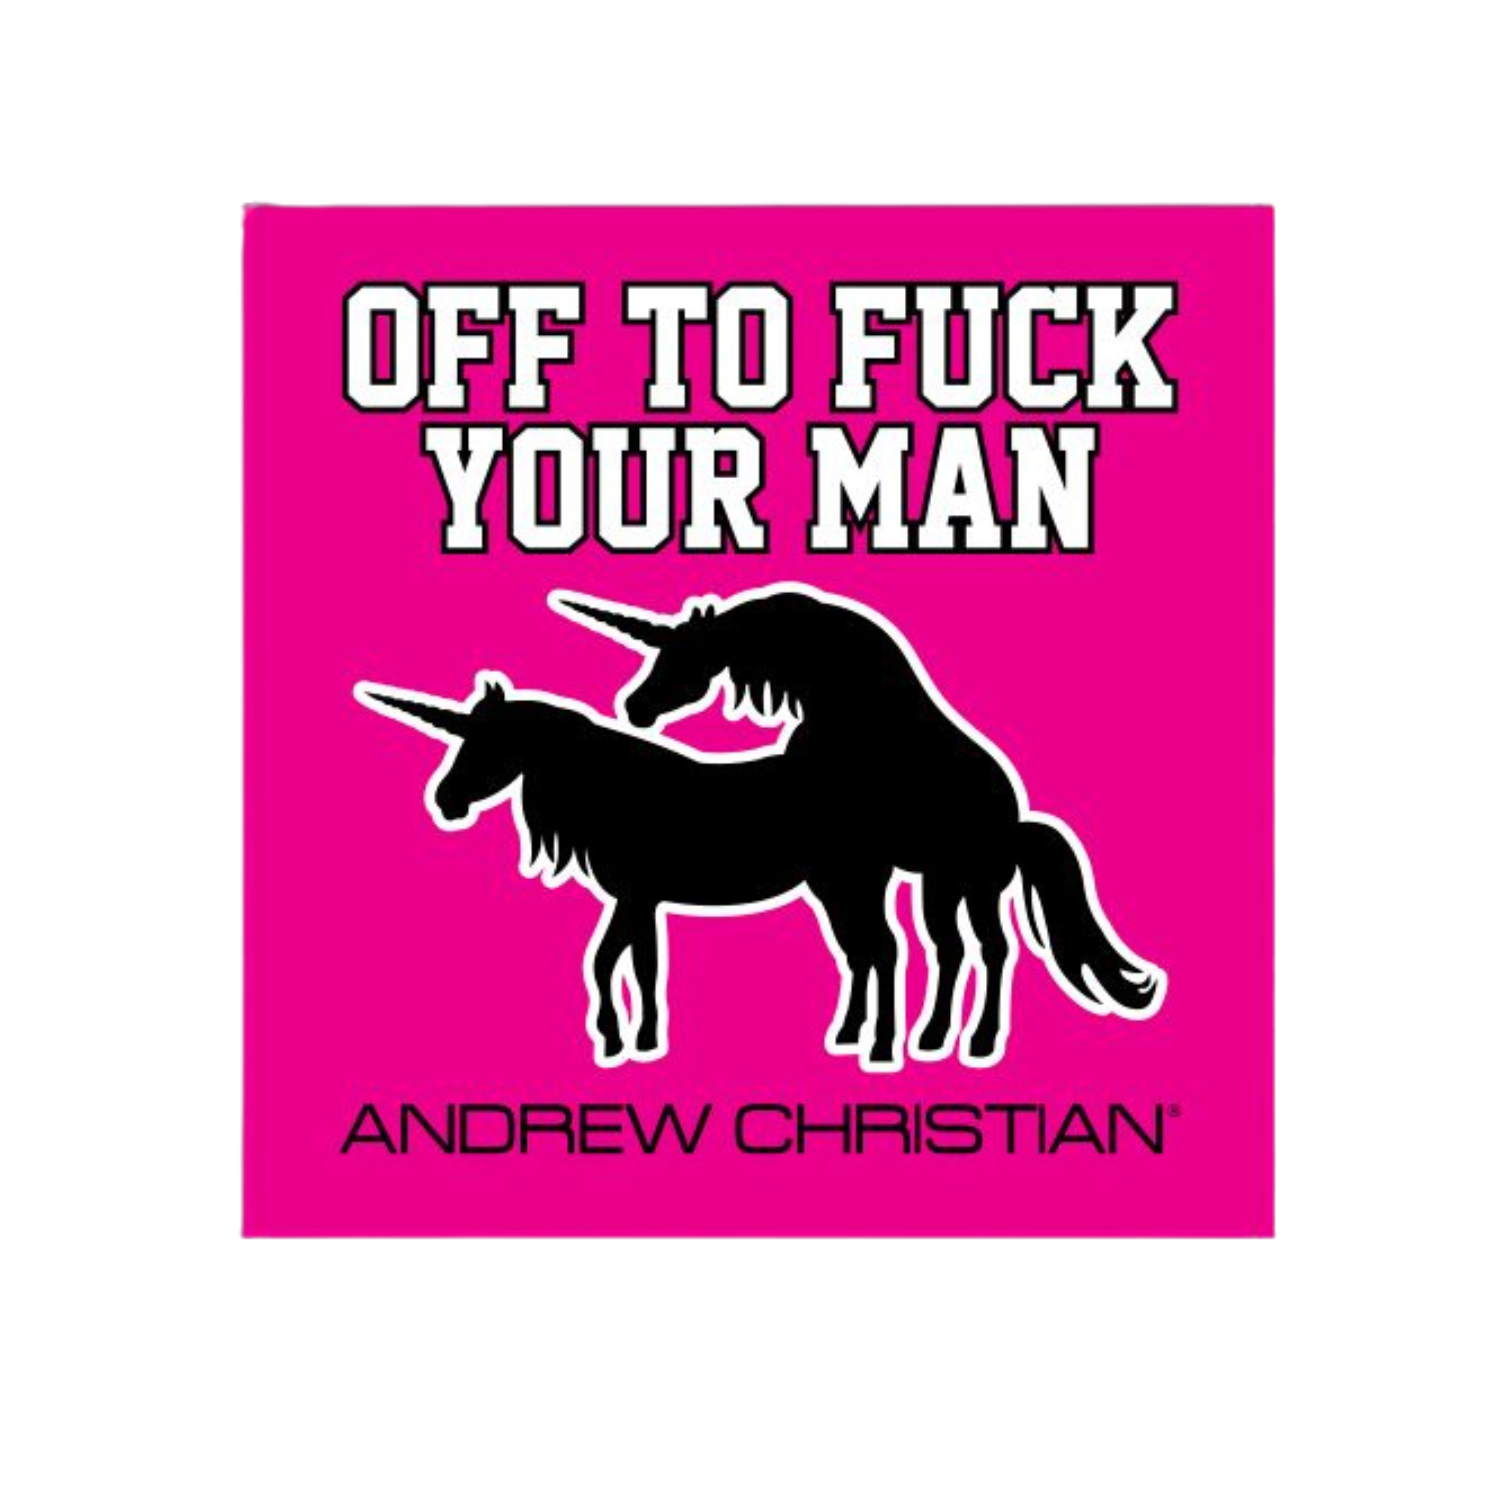 Leuke stickers met gay thema of LGBTQ+ thema, zoals deze leuke stickers ontworpen door Andrew Christian koop je bij Flavourez! Deze "Off to fuck your man" sticker is erg uniek! Door deze producten te kopen steun je kleine en grote LGBTQ+ of Gay ondernemingen. Ben trots op wie je bent!